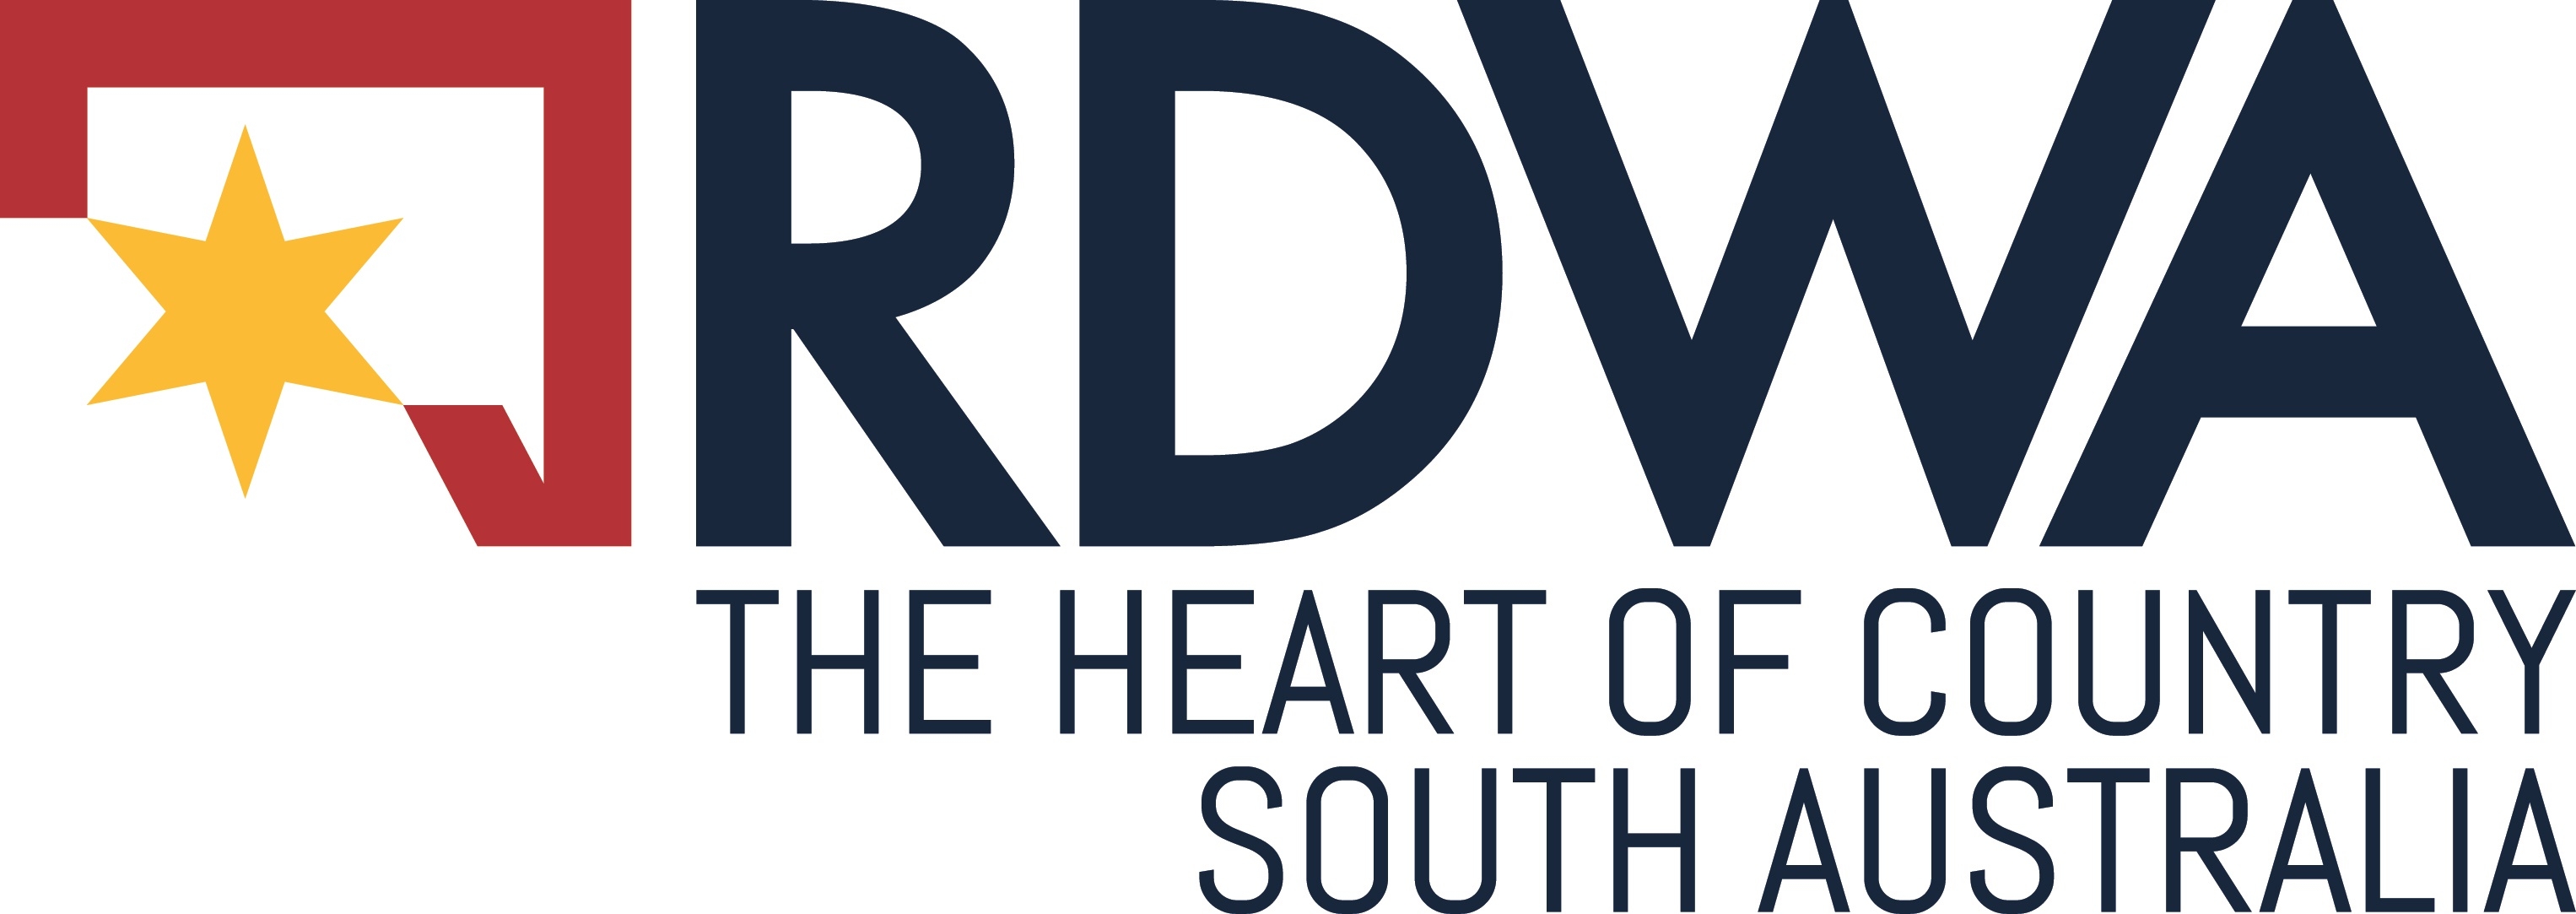 RDWA_Horizontal-Logo_CMYK-002.jpg#asset:1299